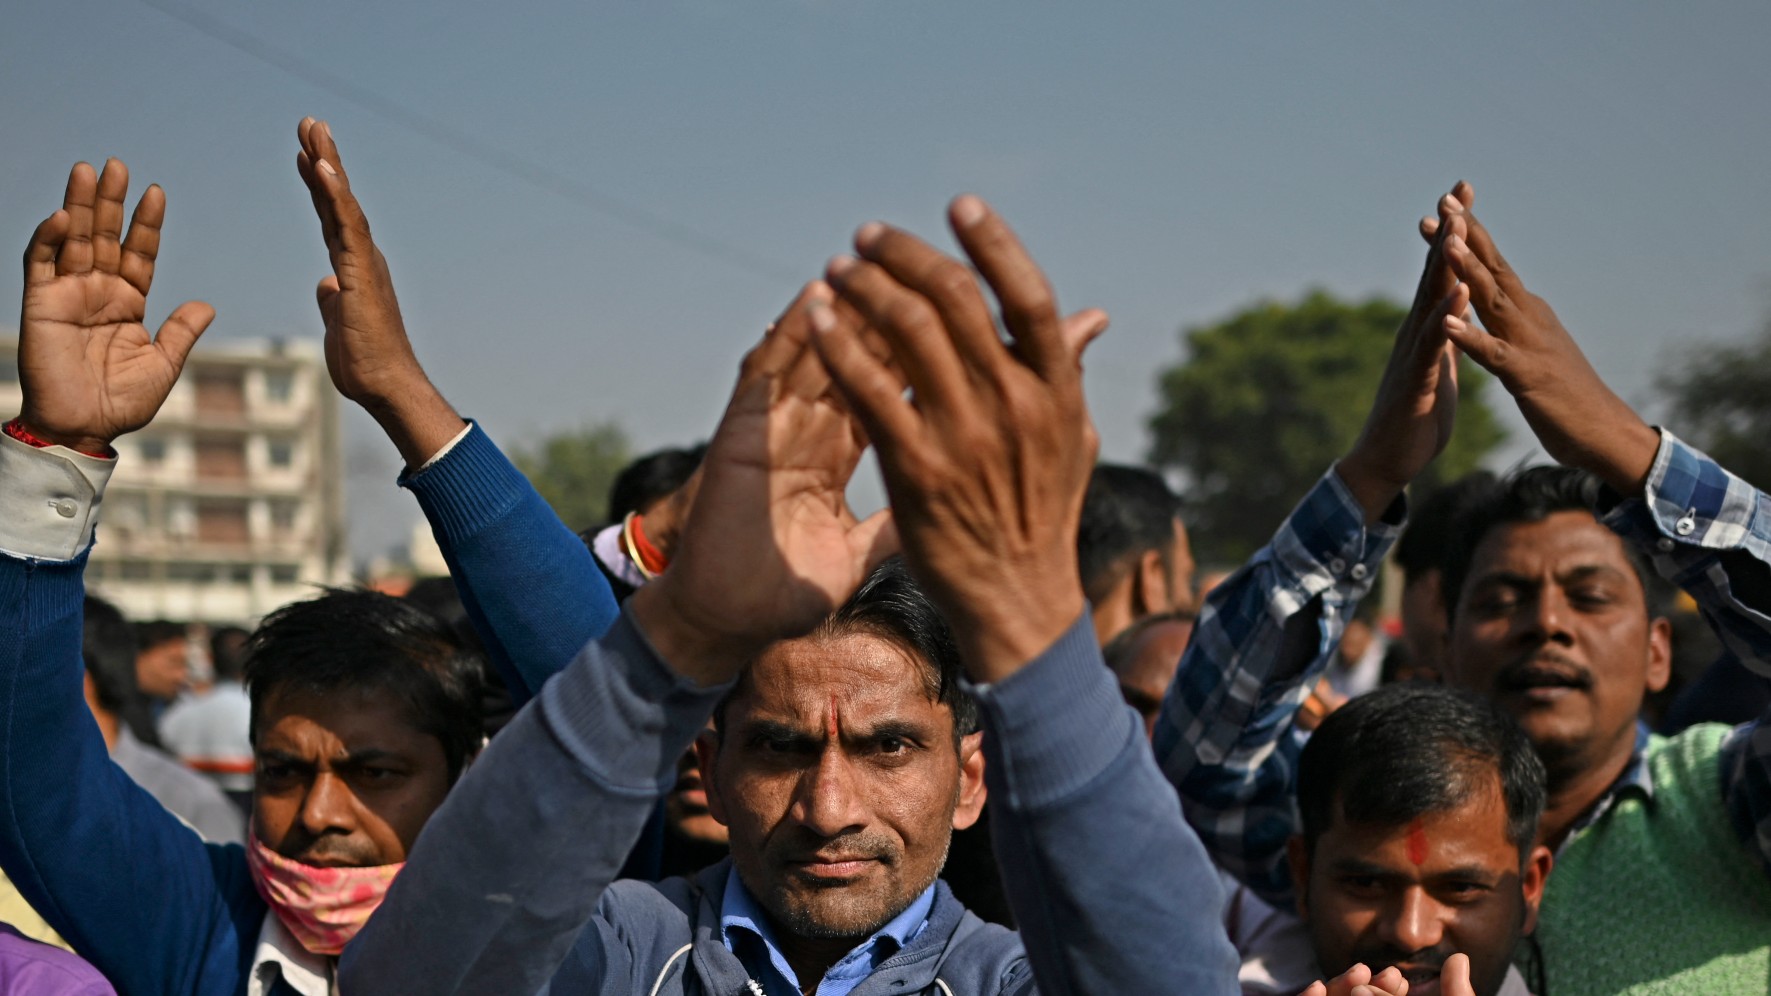 Des fidèles hindous participent à un rassemblement religieux dans la banlieue de New Delhi, le 17 décembre 2021 (AFP)